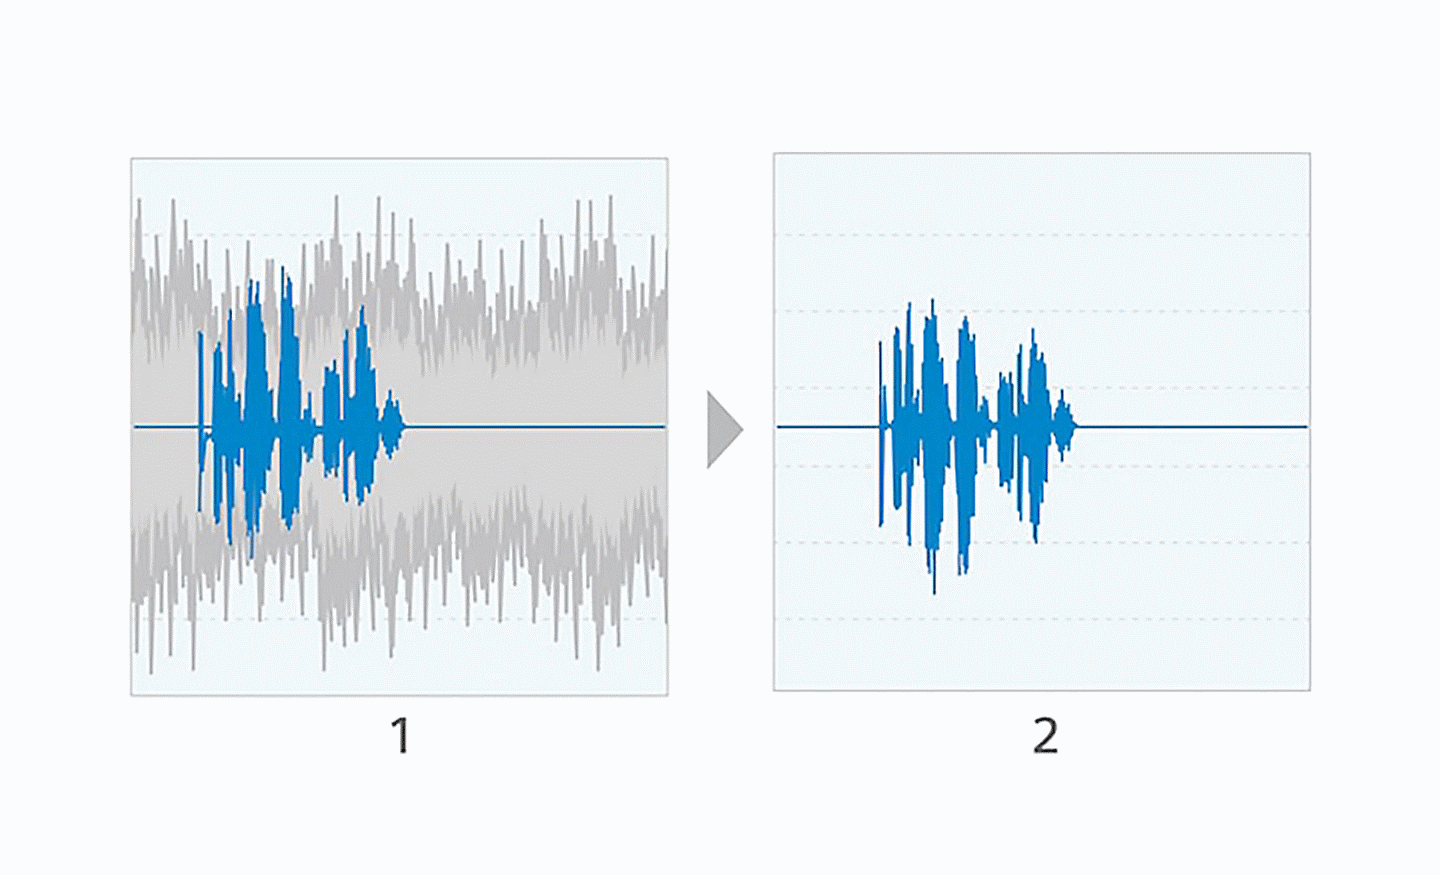 Bild zweier nebeneinander liegender Schallwellen-Diagramme, das linke enthält blaue und graue Linien, das rechte nur blaue Linien